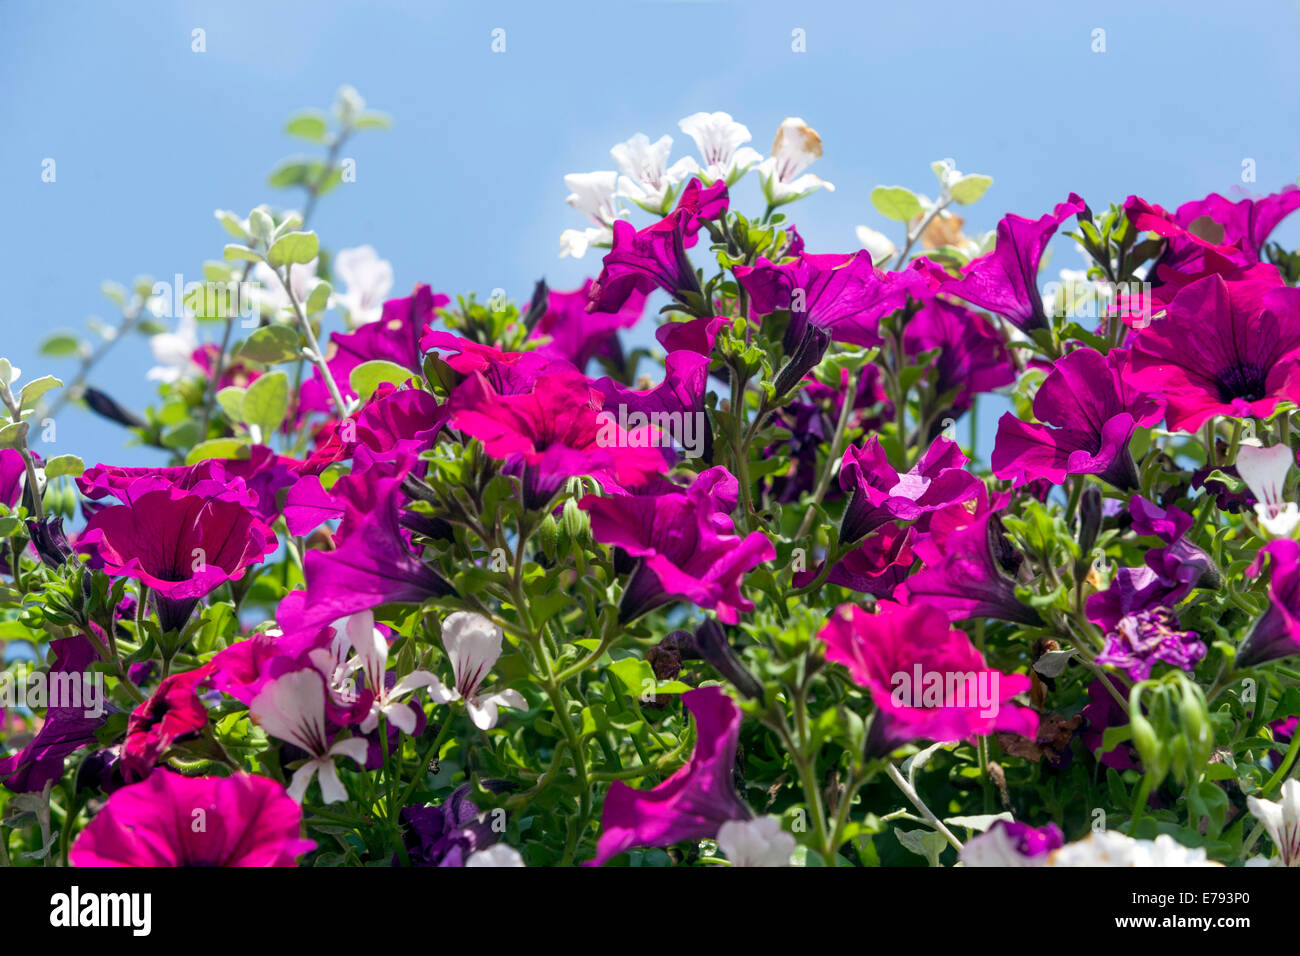 Rosa fiori di petunia fioritura delle piante Foto Stock